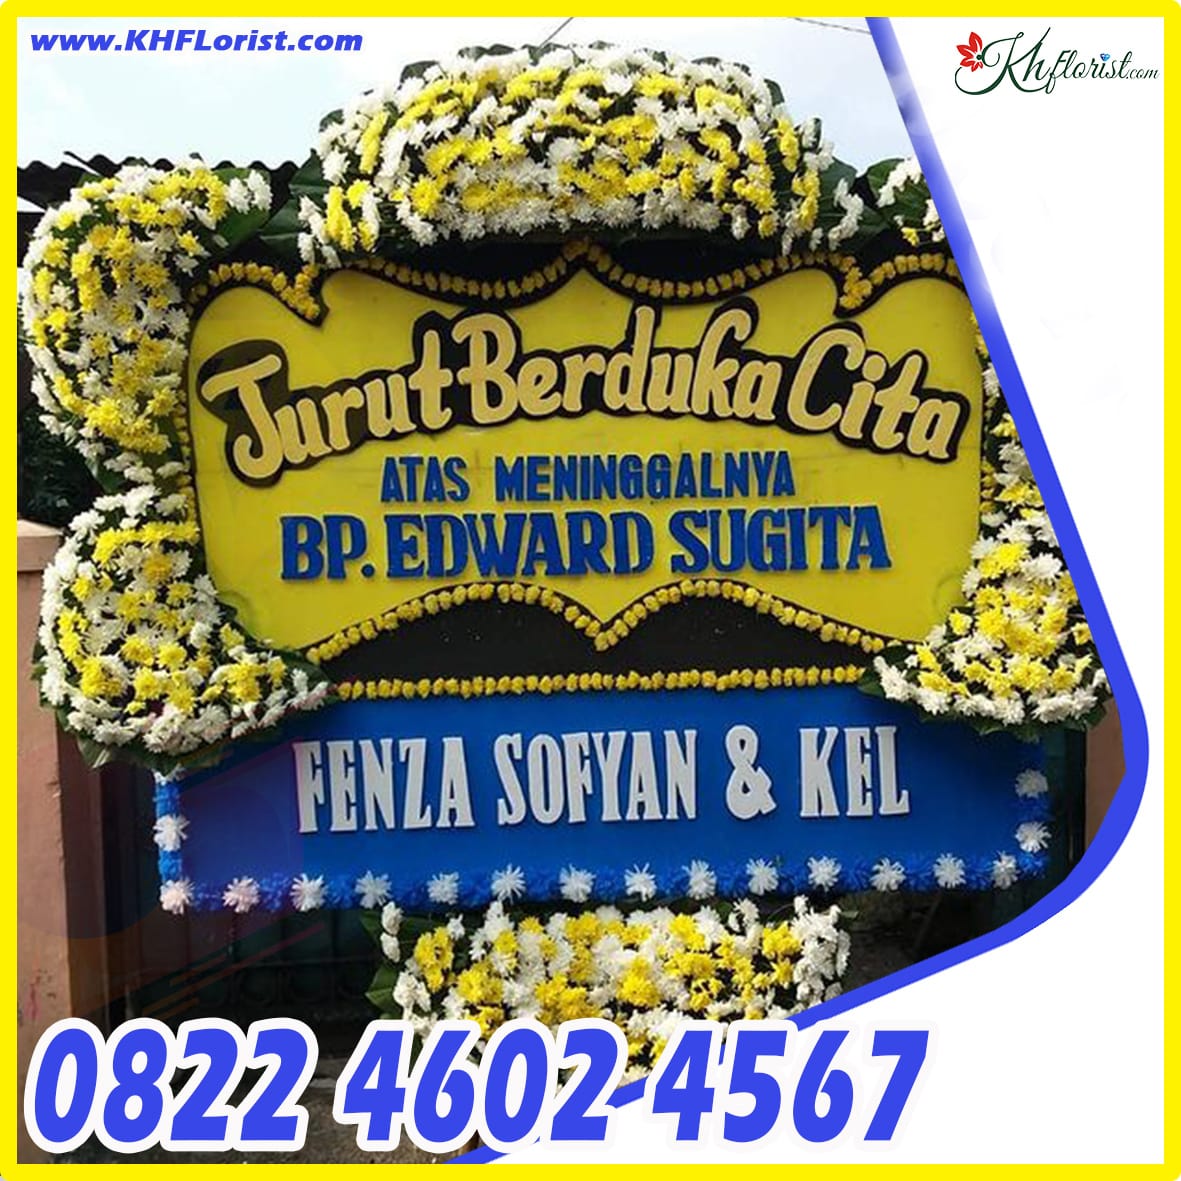 ORDER 0822 4602 4567 Toko Bunga Cilacap Karangpucung Florist 0822 